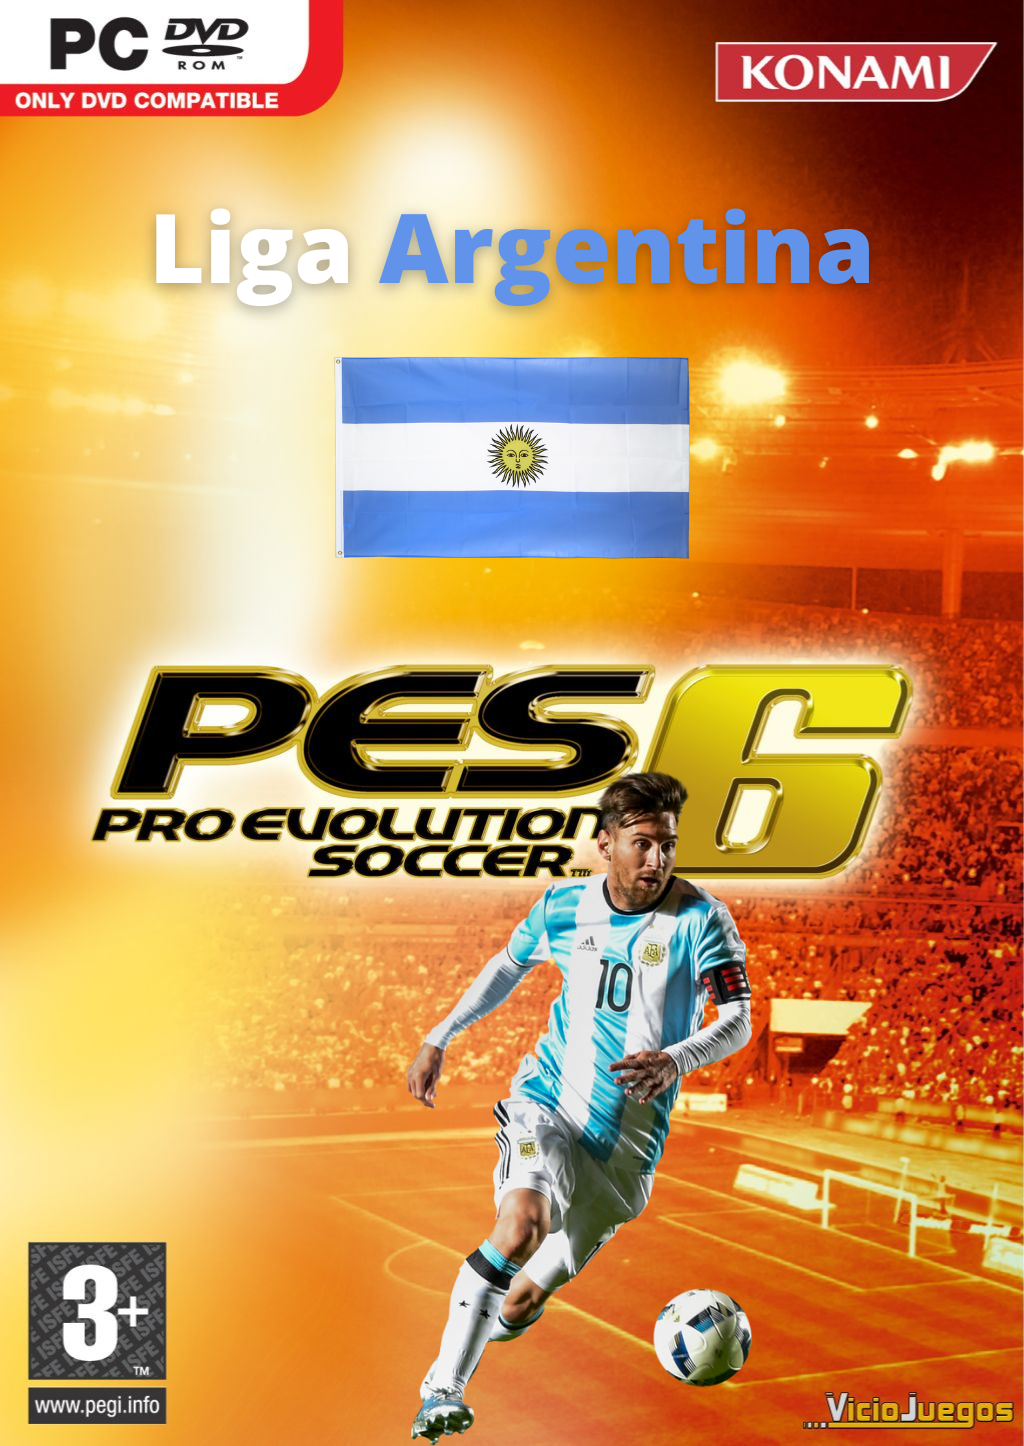 PES 06 Liga Argentina + Mundial Qatar 2022